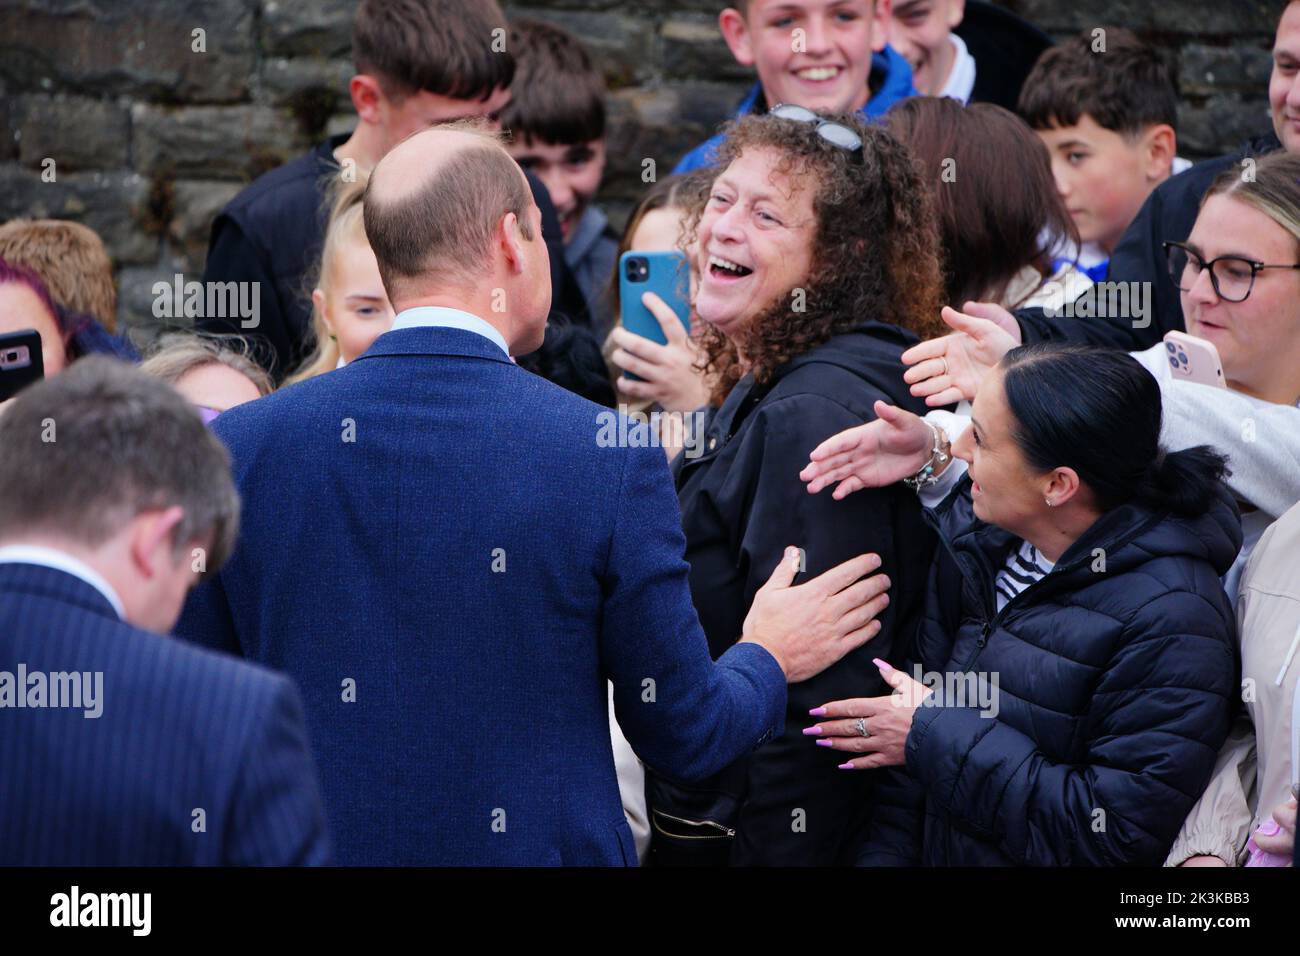 Le Prince de Galles rencontre des membres du public lorsqu'il part après une visite à l'église St Thomas, à Swansea, au pays de Galles. Date de la photo: Mardi 27 septembre 2022. Banque D'Images